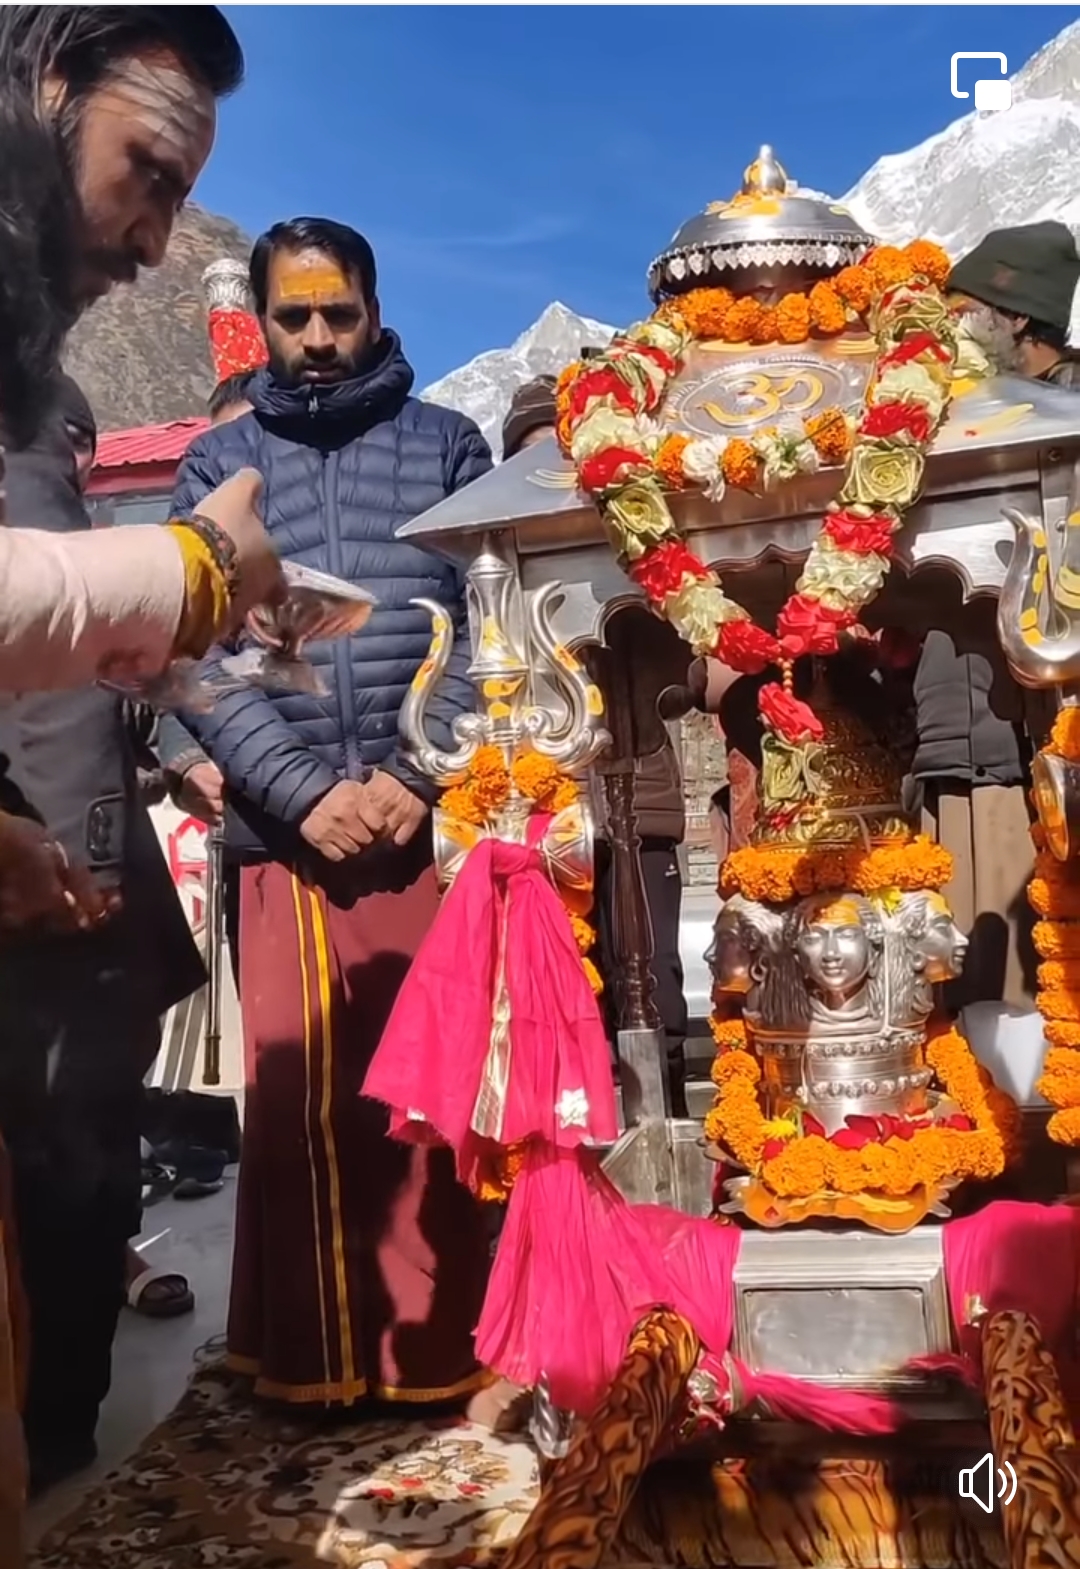 Kedarnath temple,केदारनाथ धाम के कपाट आज अगले छः महीने के लिए बंद।